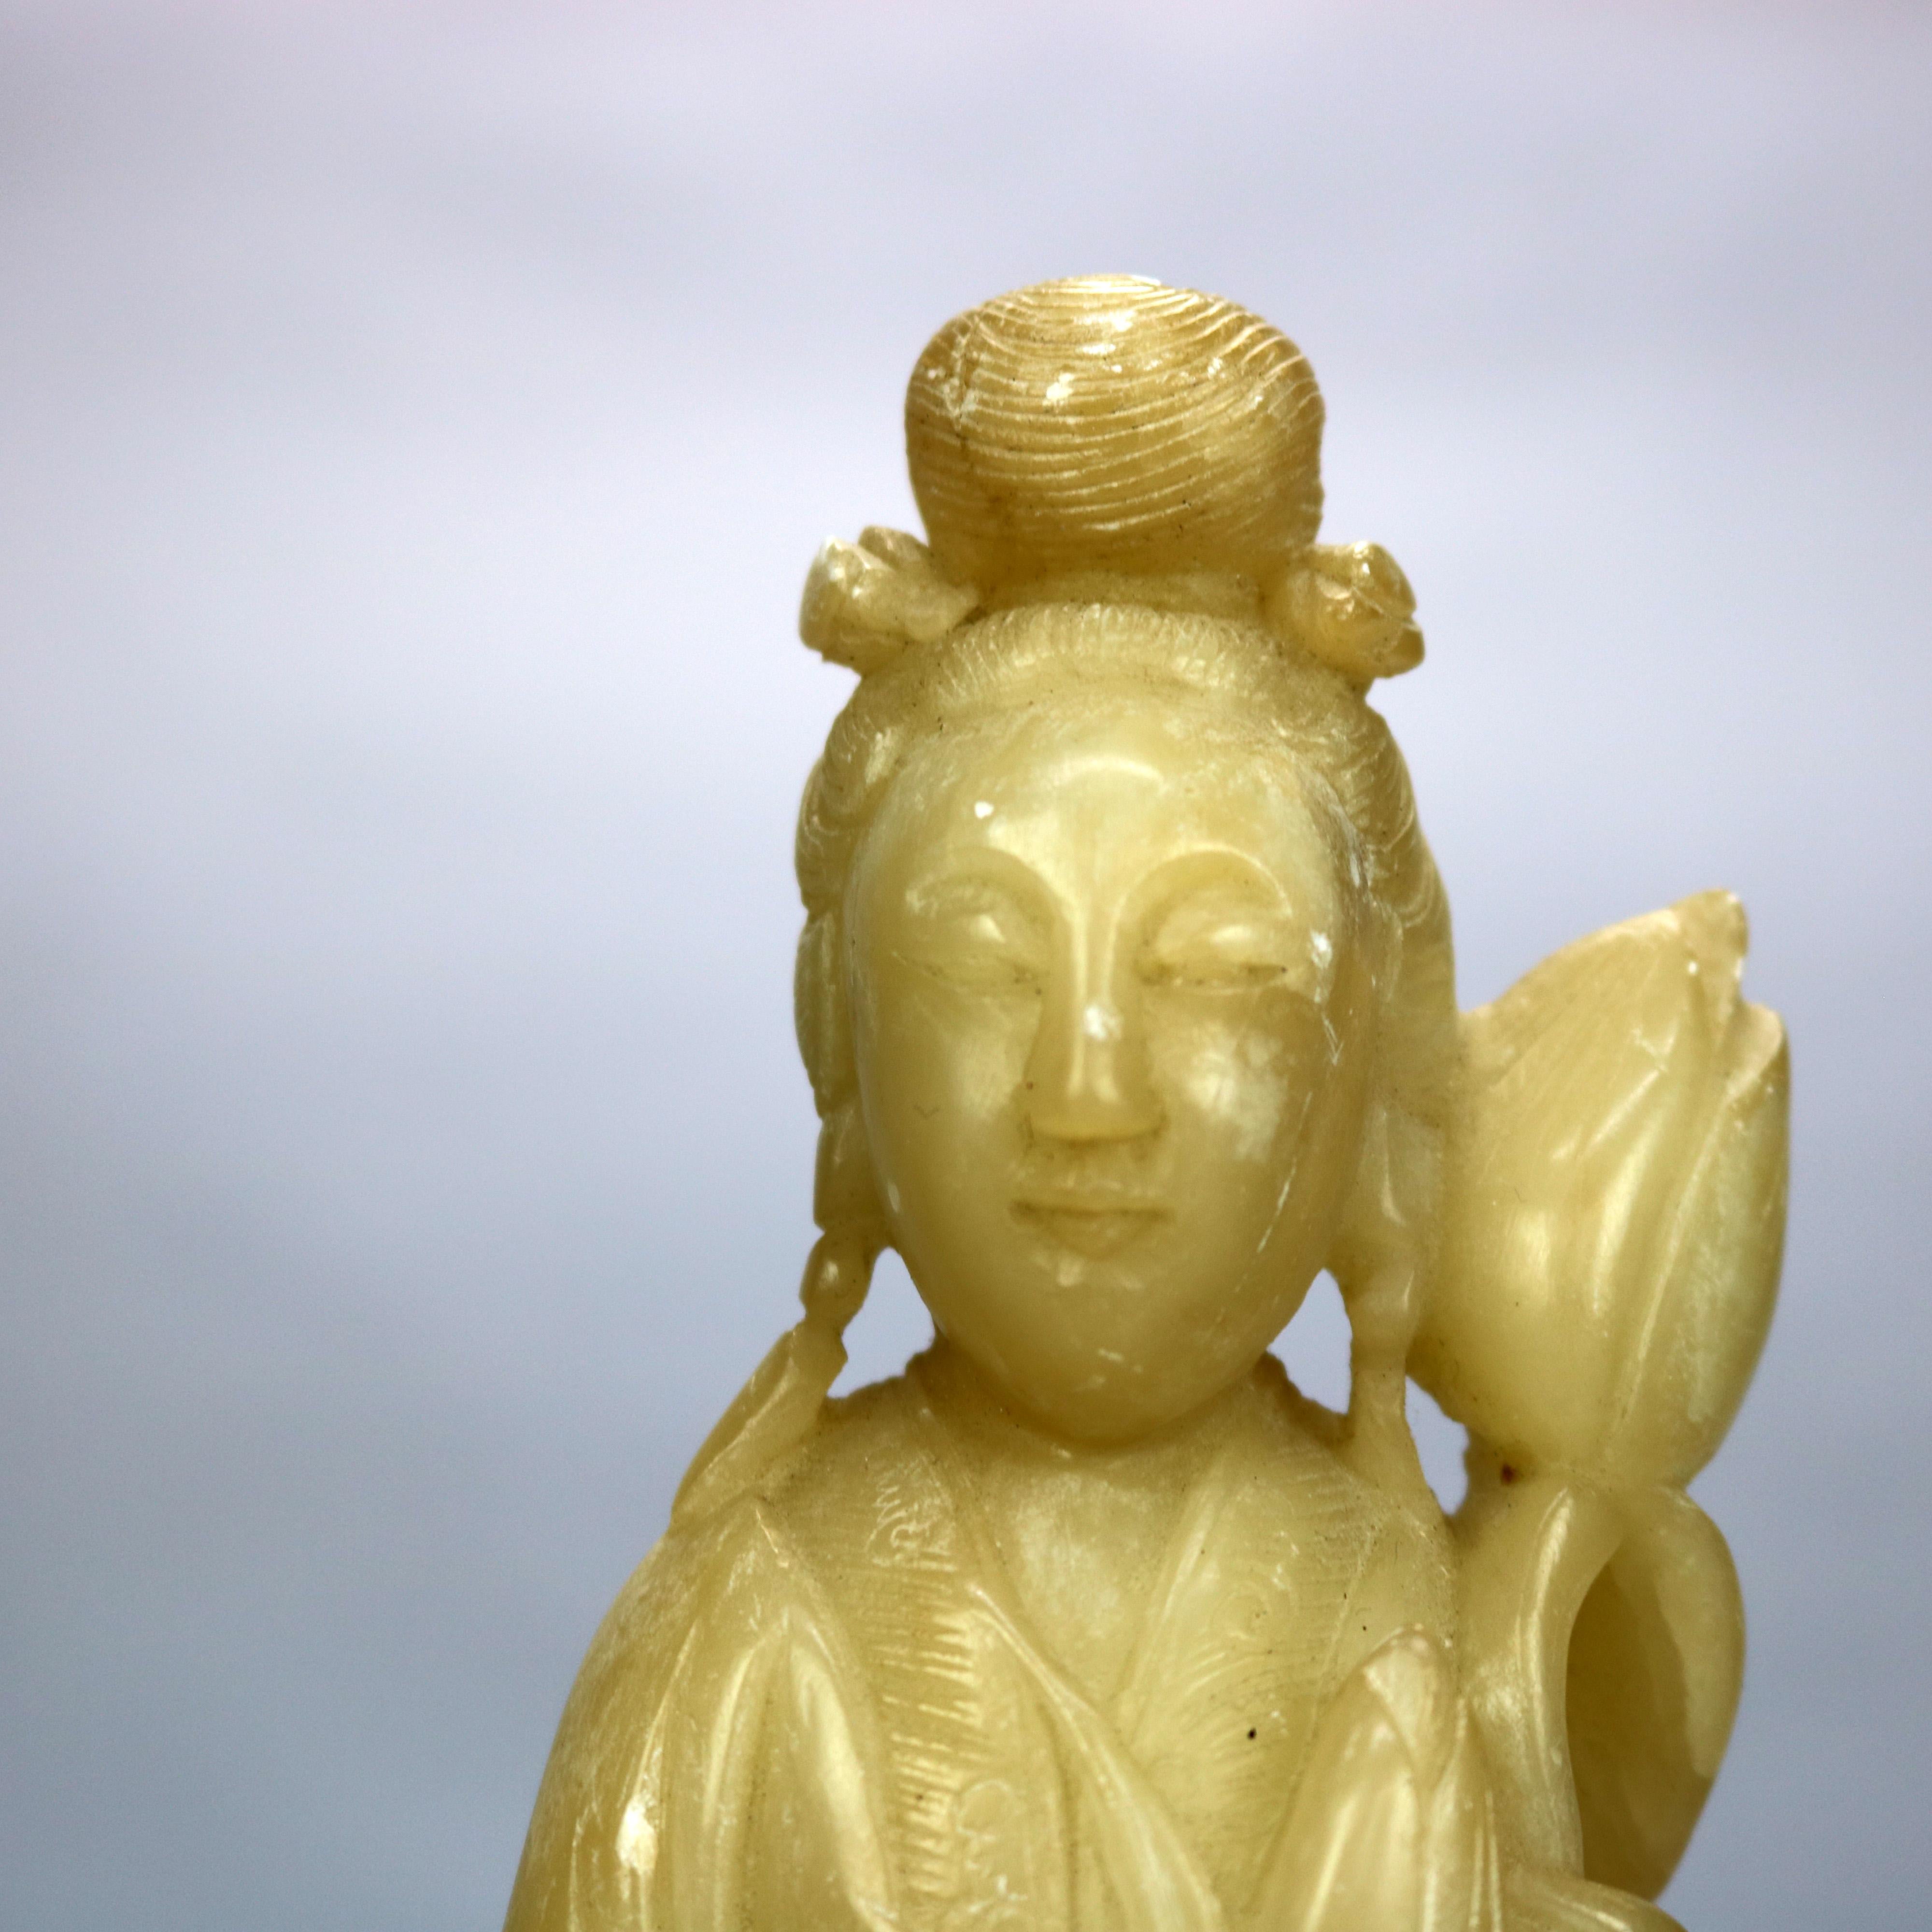 Un Bouddha asiatique antique offre une figure en stéatite sculptée d'une femme debout avec une fleur, assise sur une base en bois dur sculpté, c1910

Mesures : 13.25